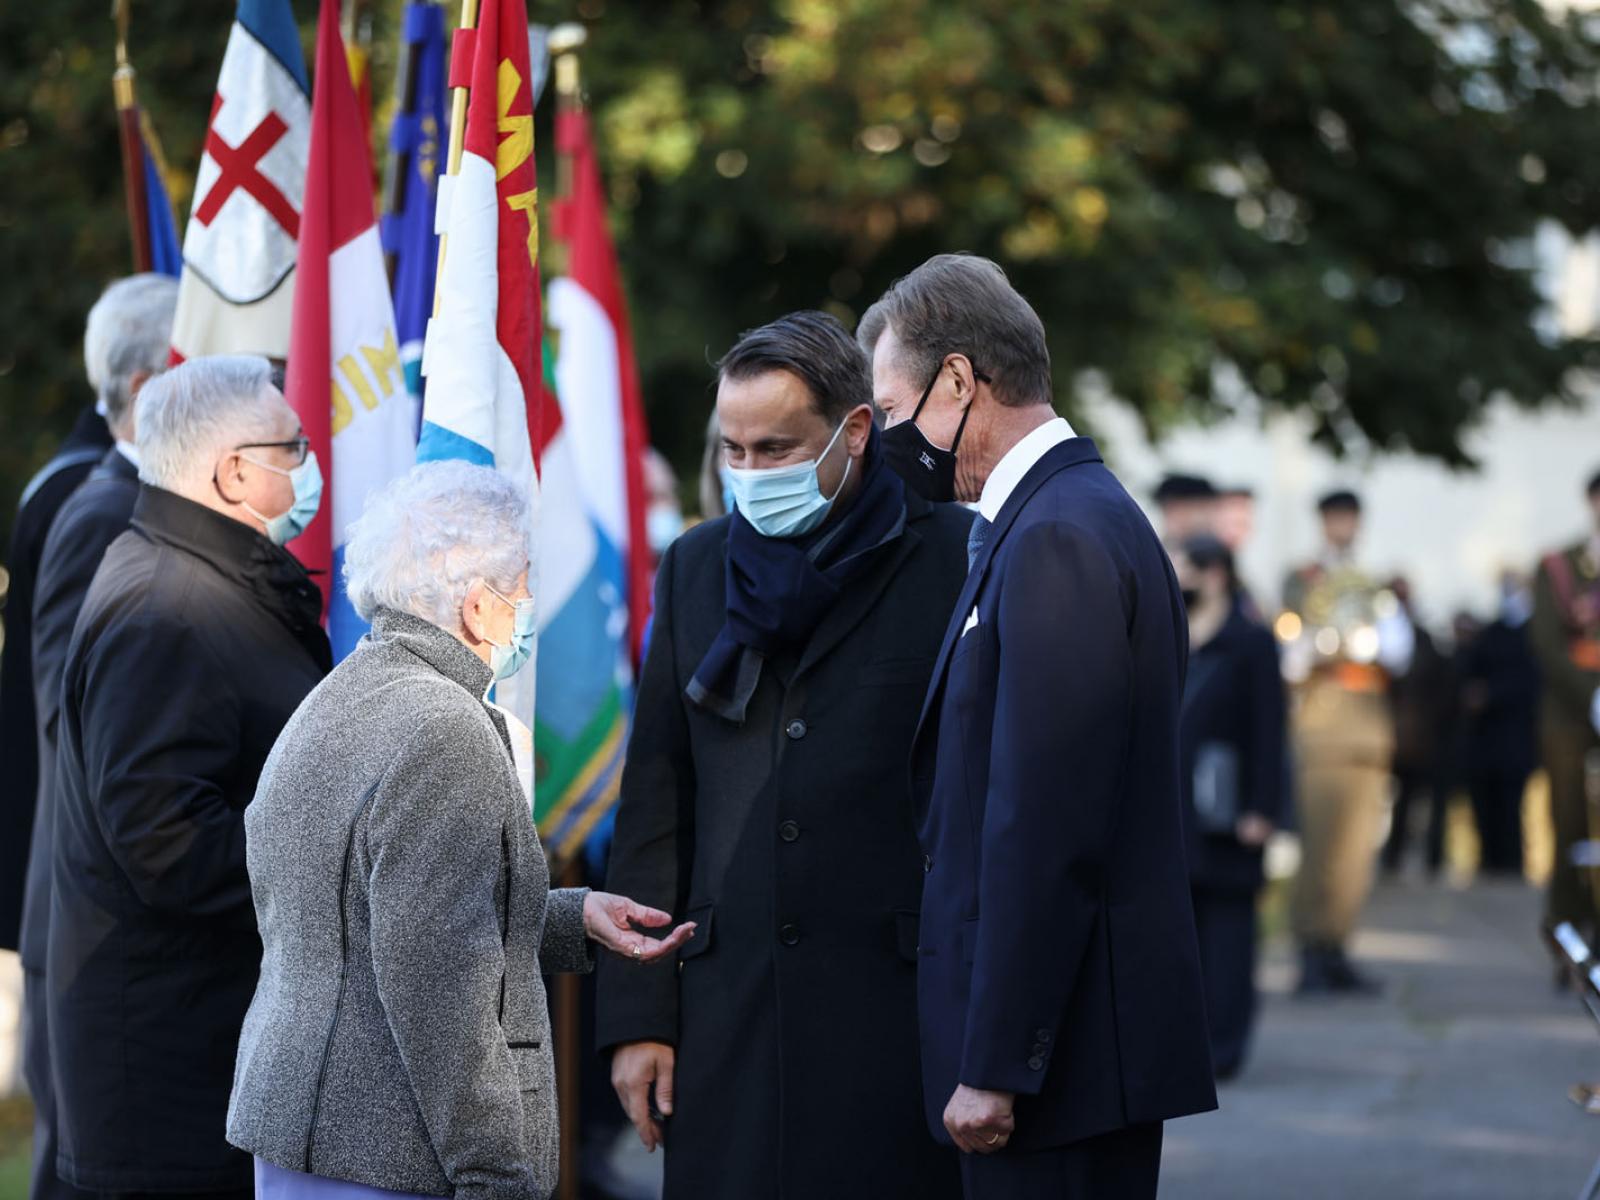 Le Grand-Duc et le Premier ministre échangent avec des invités